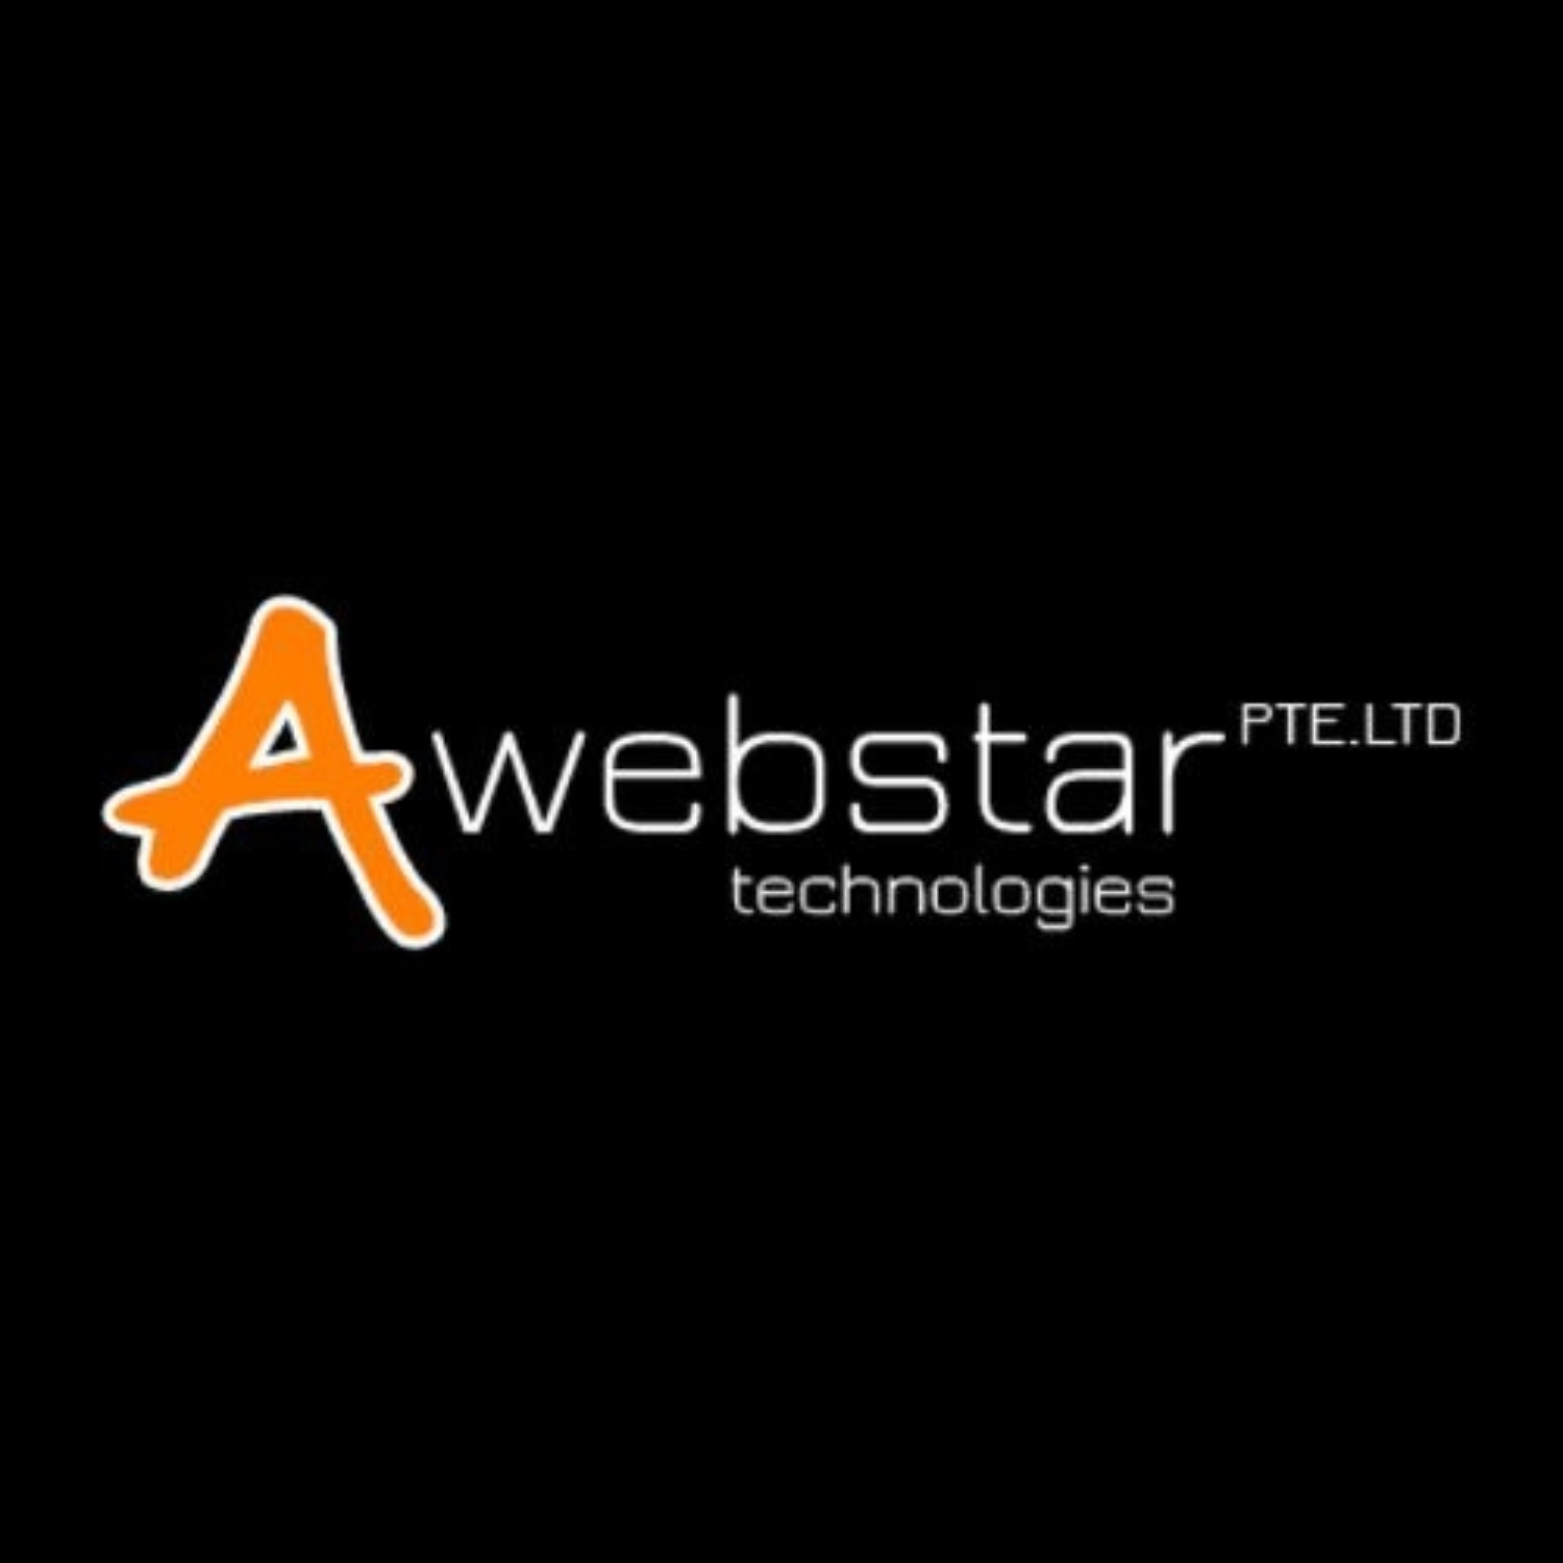 (c) Awebstar.com.sg